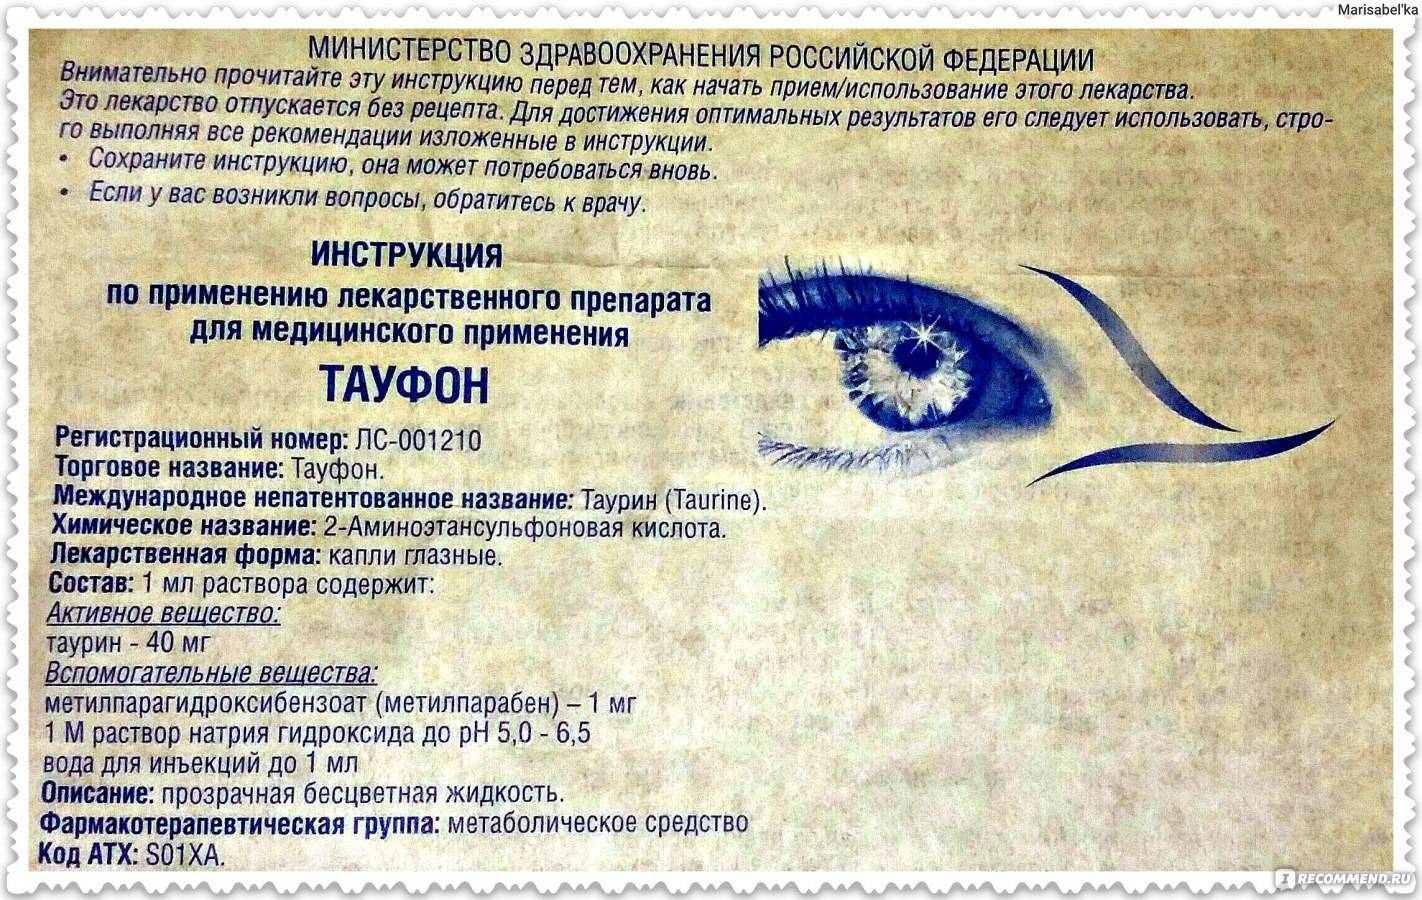 Какие лекарственные препараты применяются для лечения болезней сетчатки глаза: список, механизм действия